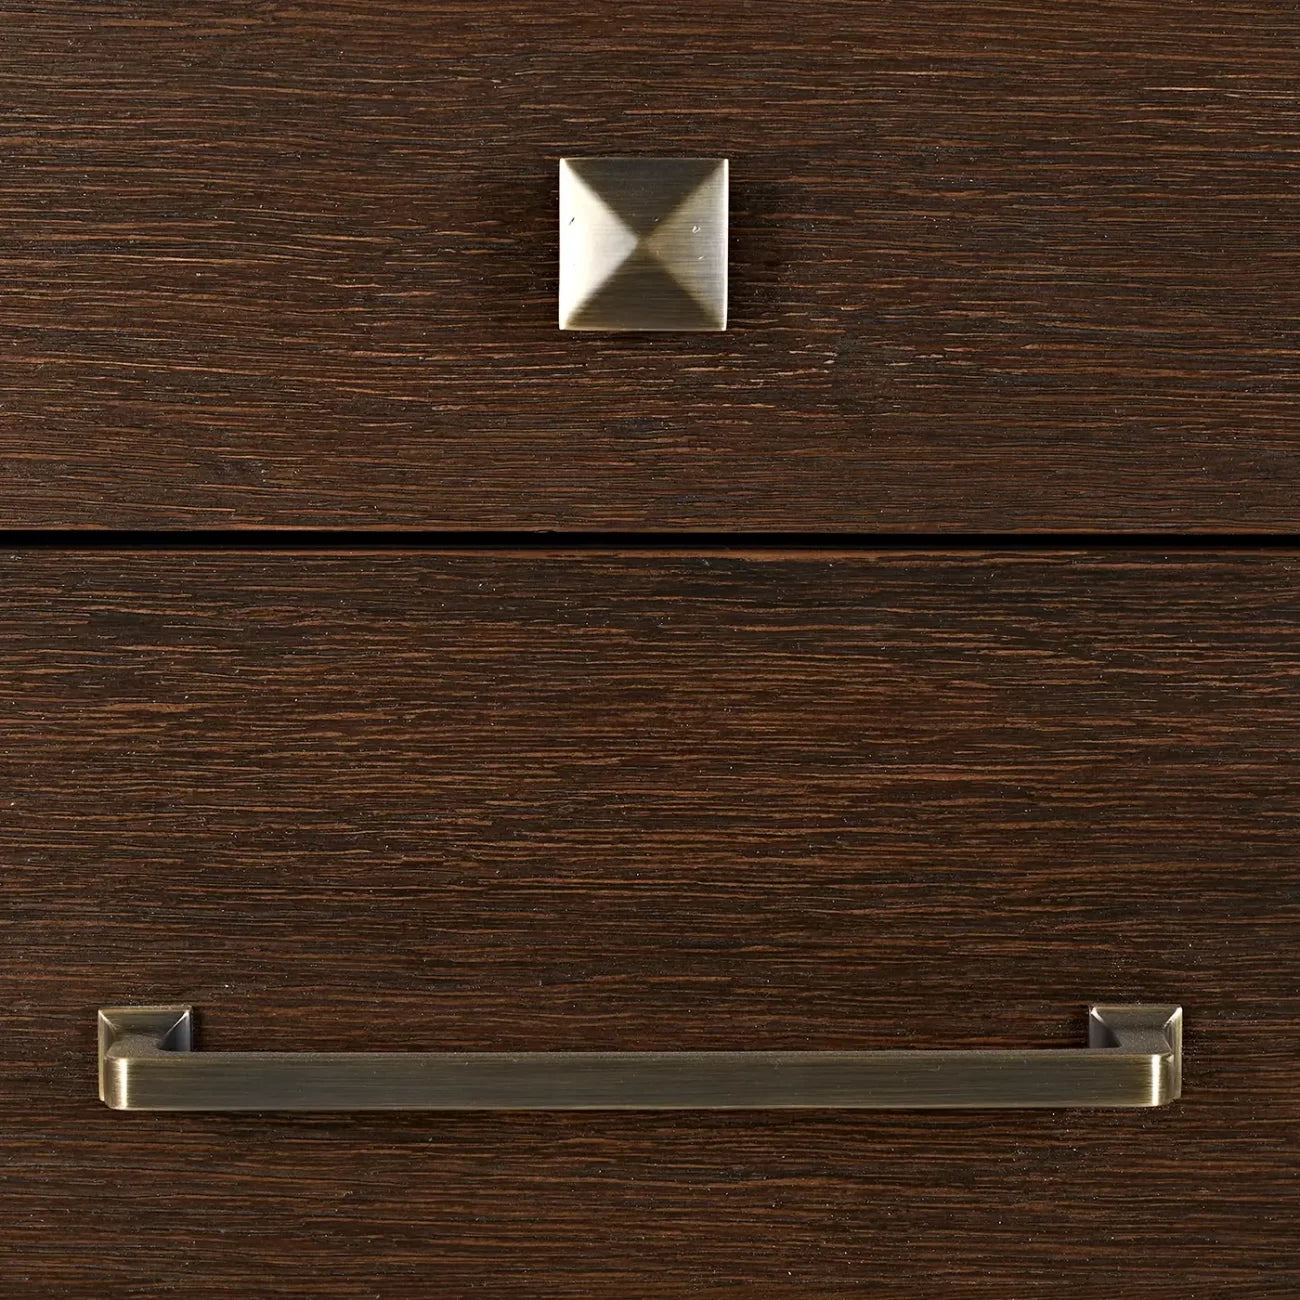 Hudson 6 drawer chest brushed brown oak